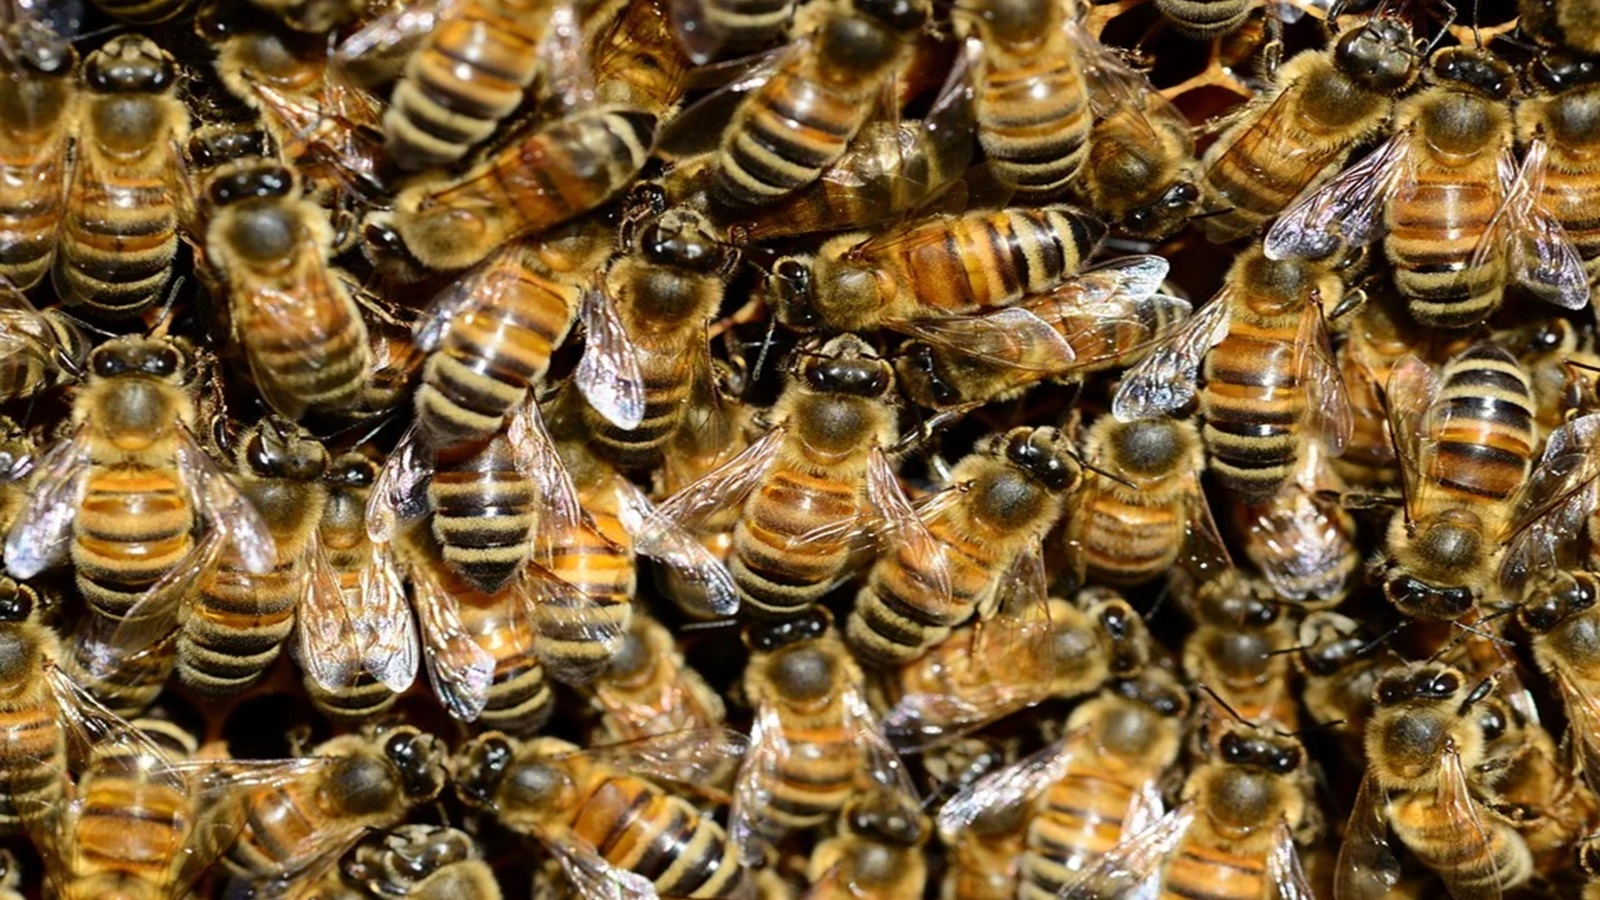 ‪إناث النحل تأتي من البويضات المخصبة خلافا للذكور (بيكساباي)‬ إناث النحل تأتي من البويضات المخصبة خلافا للذكور (بيكساباي)